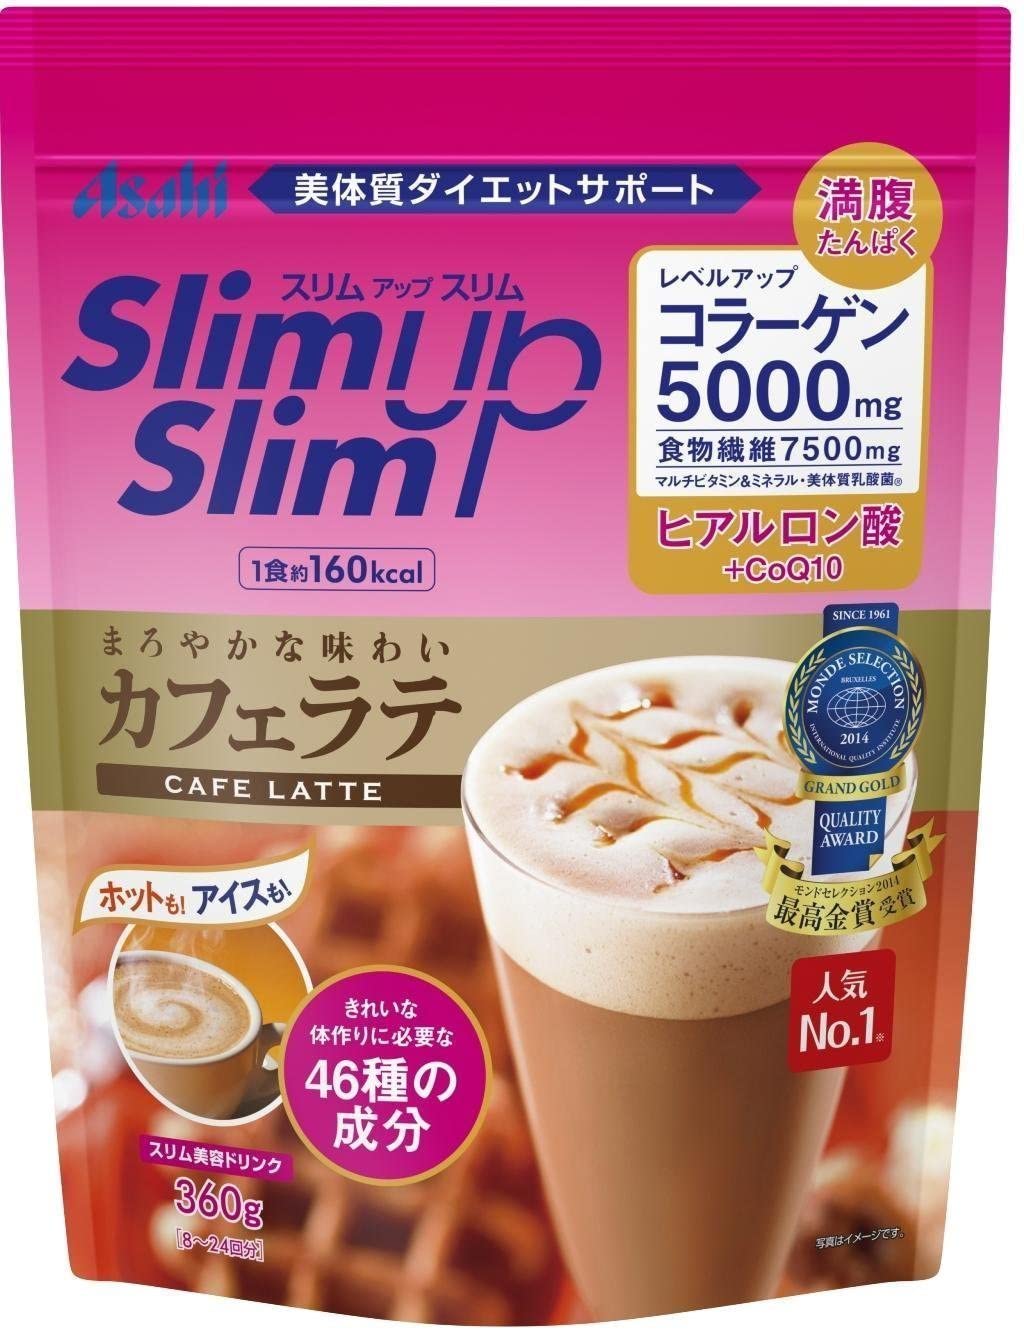 Коктейль с коллагеном. Протеин японский slimup Asahi. Asahi протеиновый коктейль с коллагеном. Slim up Slim Asahi. Слим для похудения коктейль.